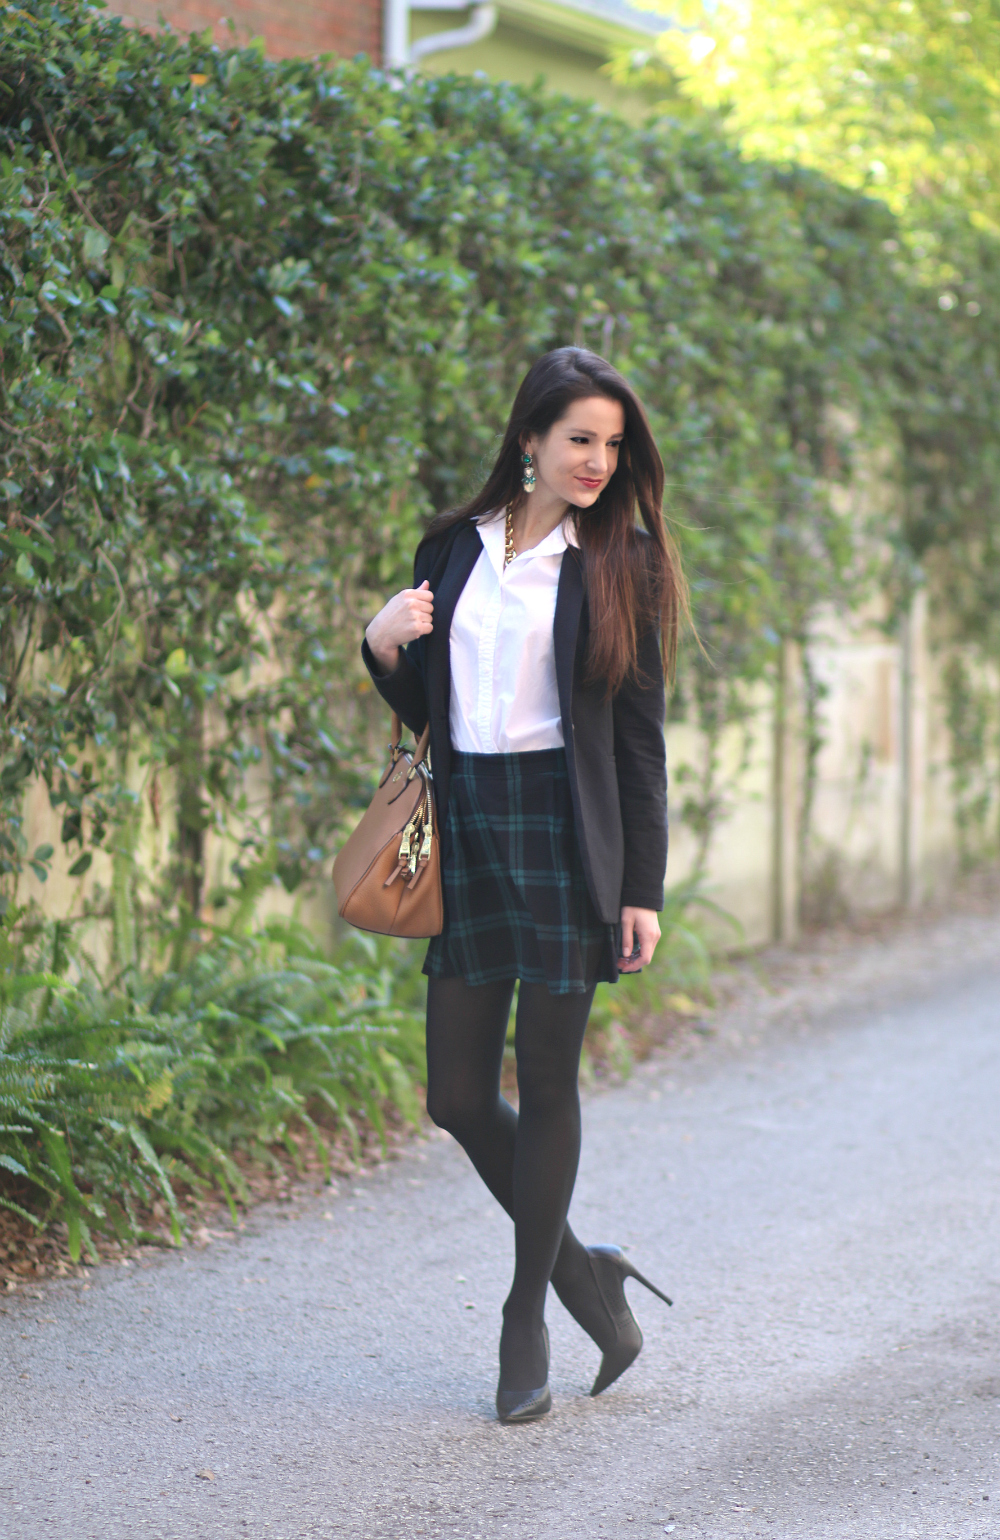 Black Plaid Skirt, Black Blazer, Prep School Look, Stephanie Ziajka, Diary of a Debutante, Old Navy Style